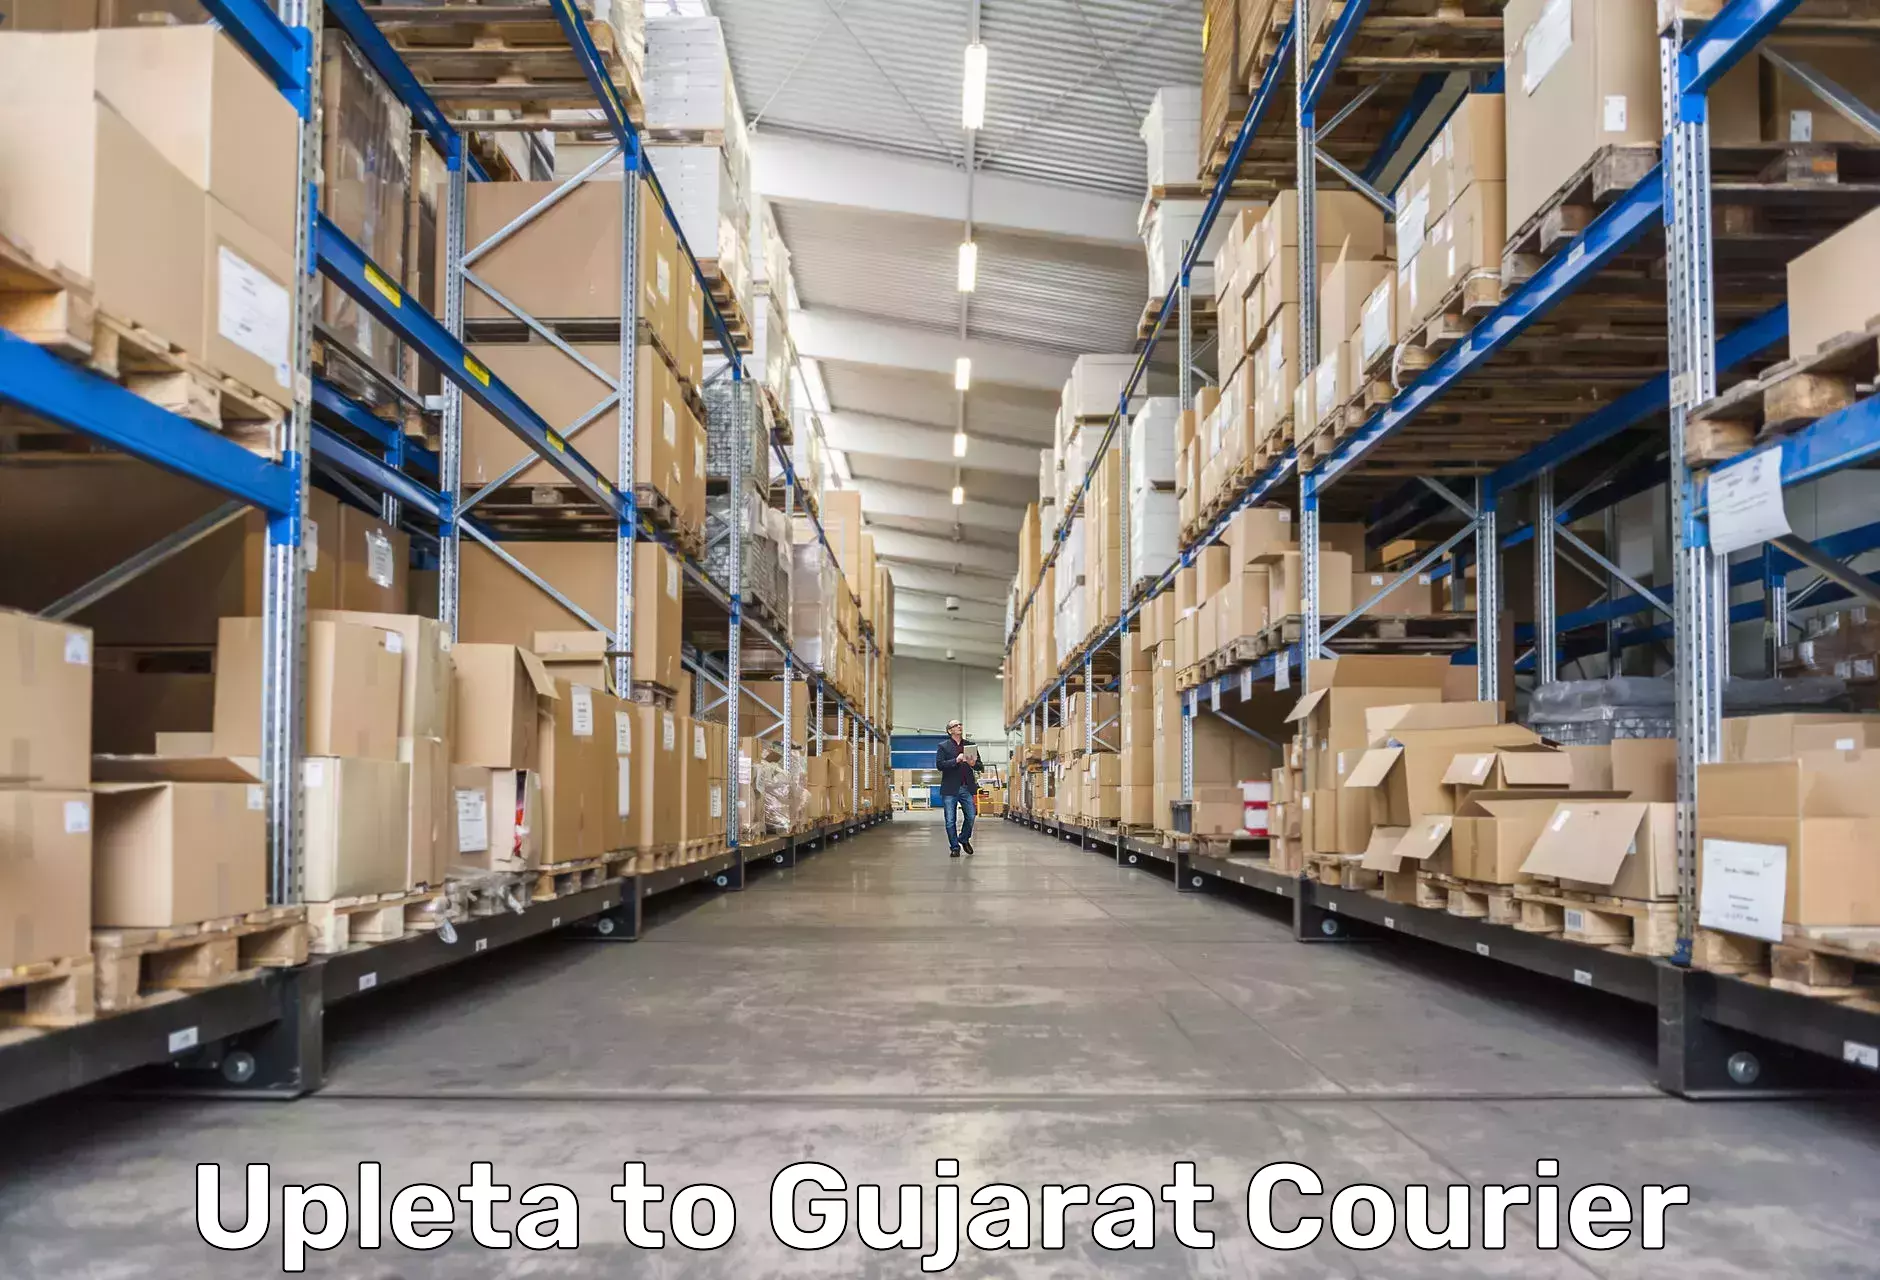 Cross-border shipping Upleta to Gujarat